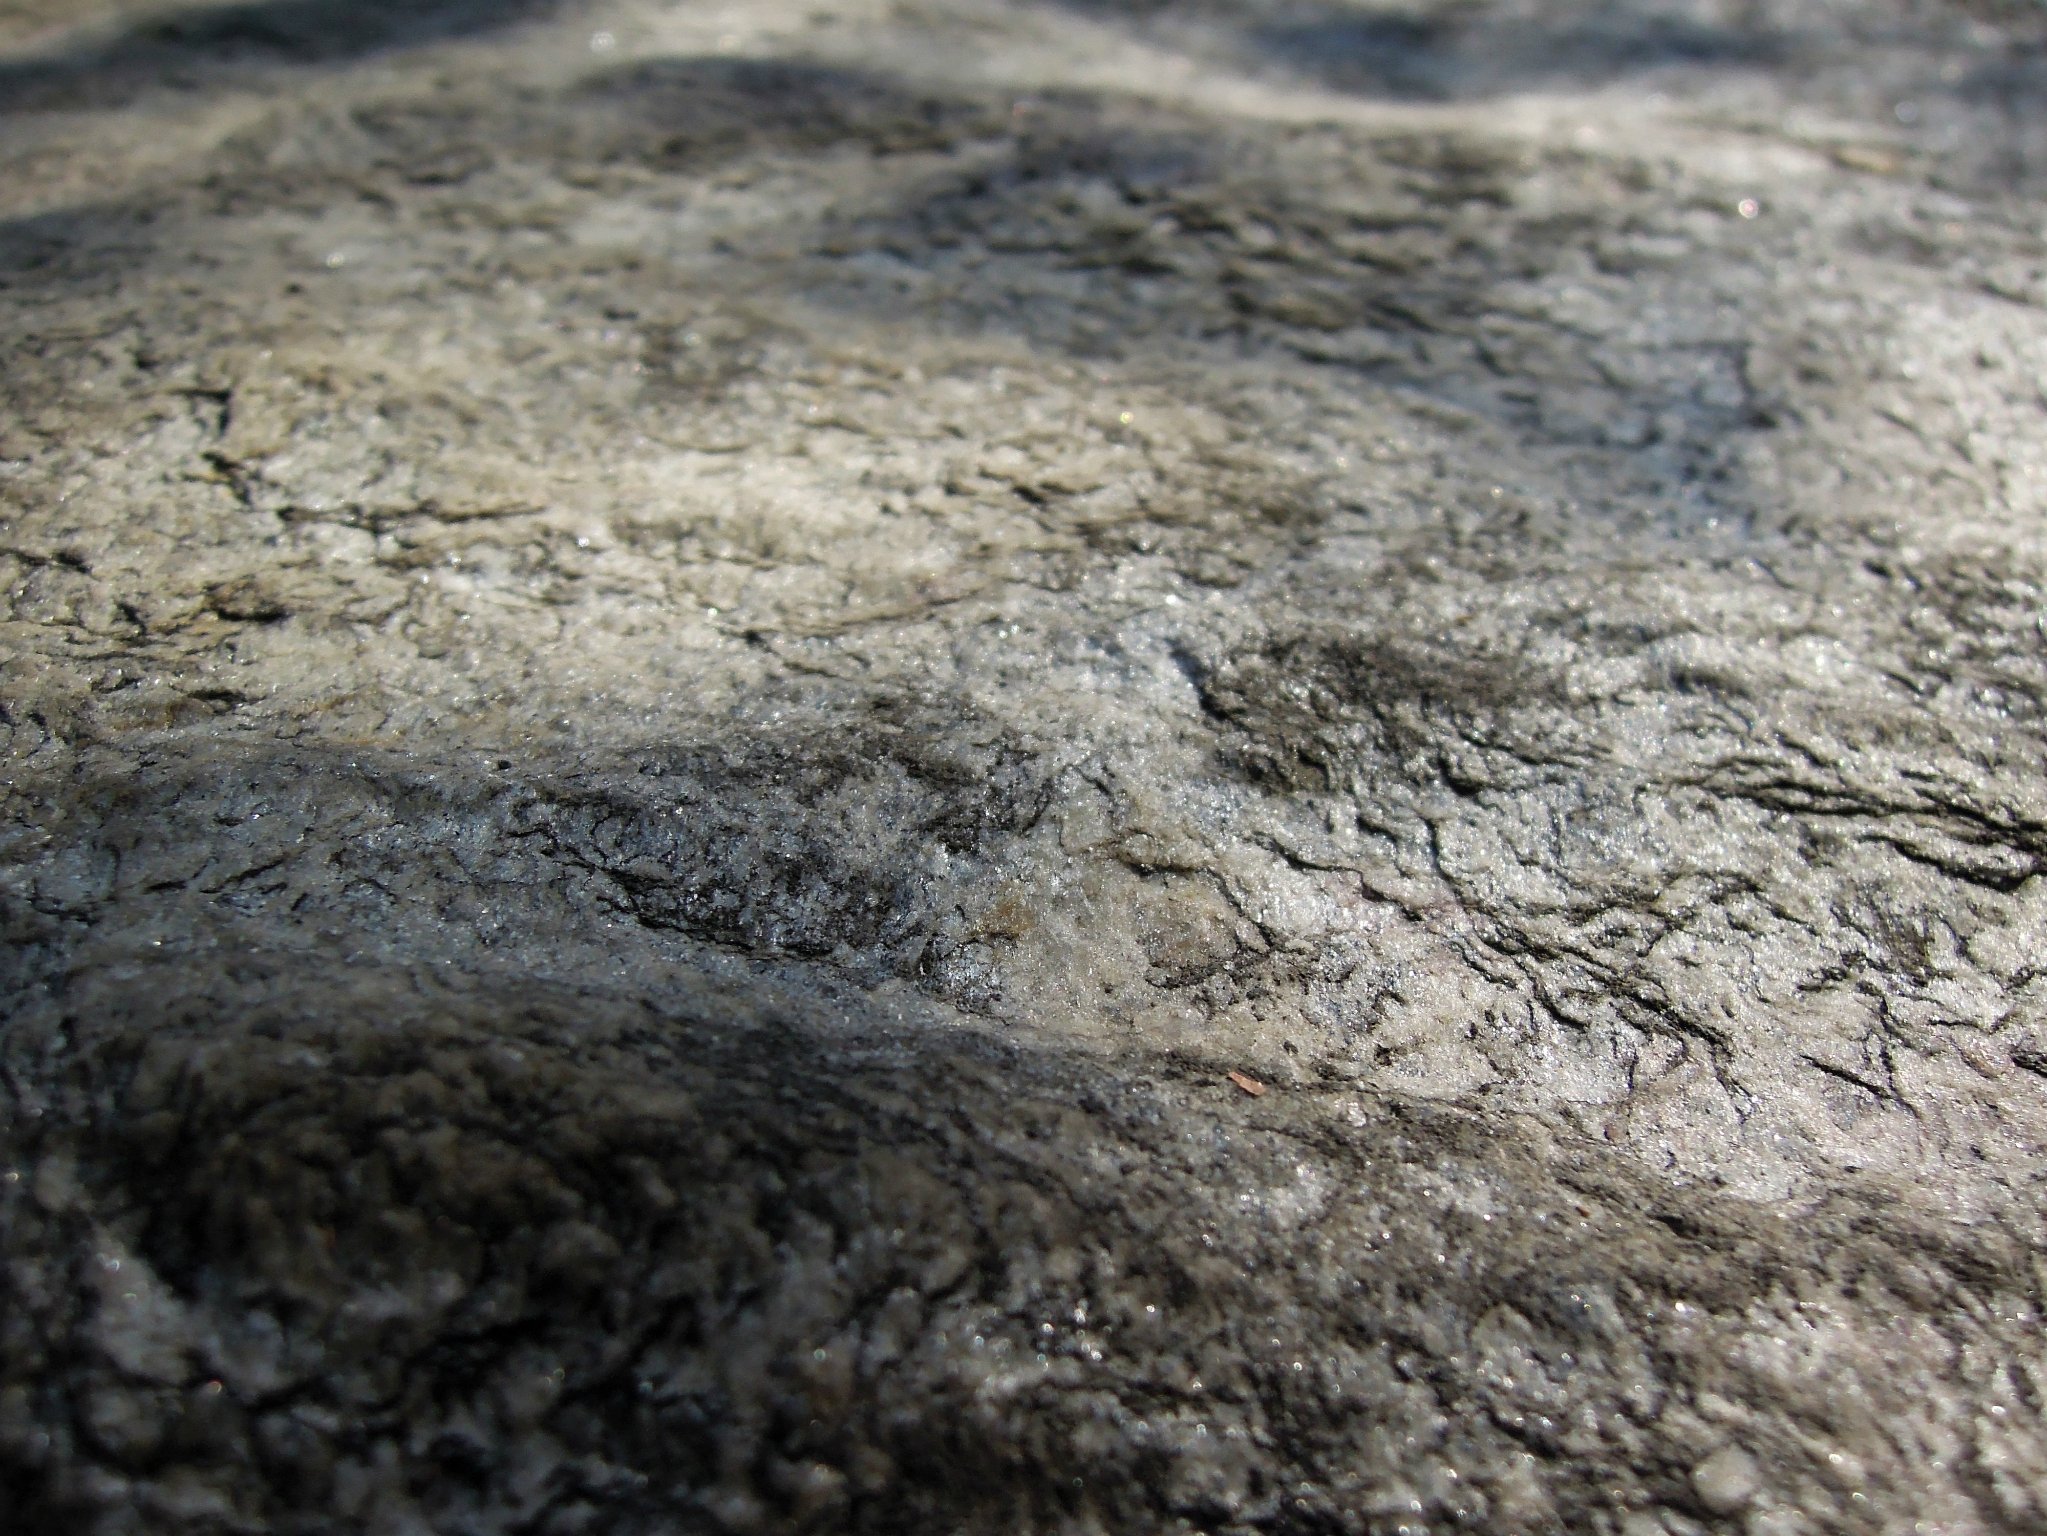 岩石层面闪闪发光细小鳞片状矿物是绢云母,它是一种变质矿物,阳光照射